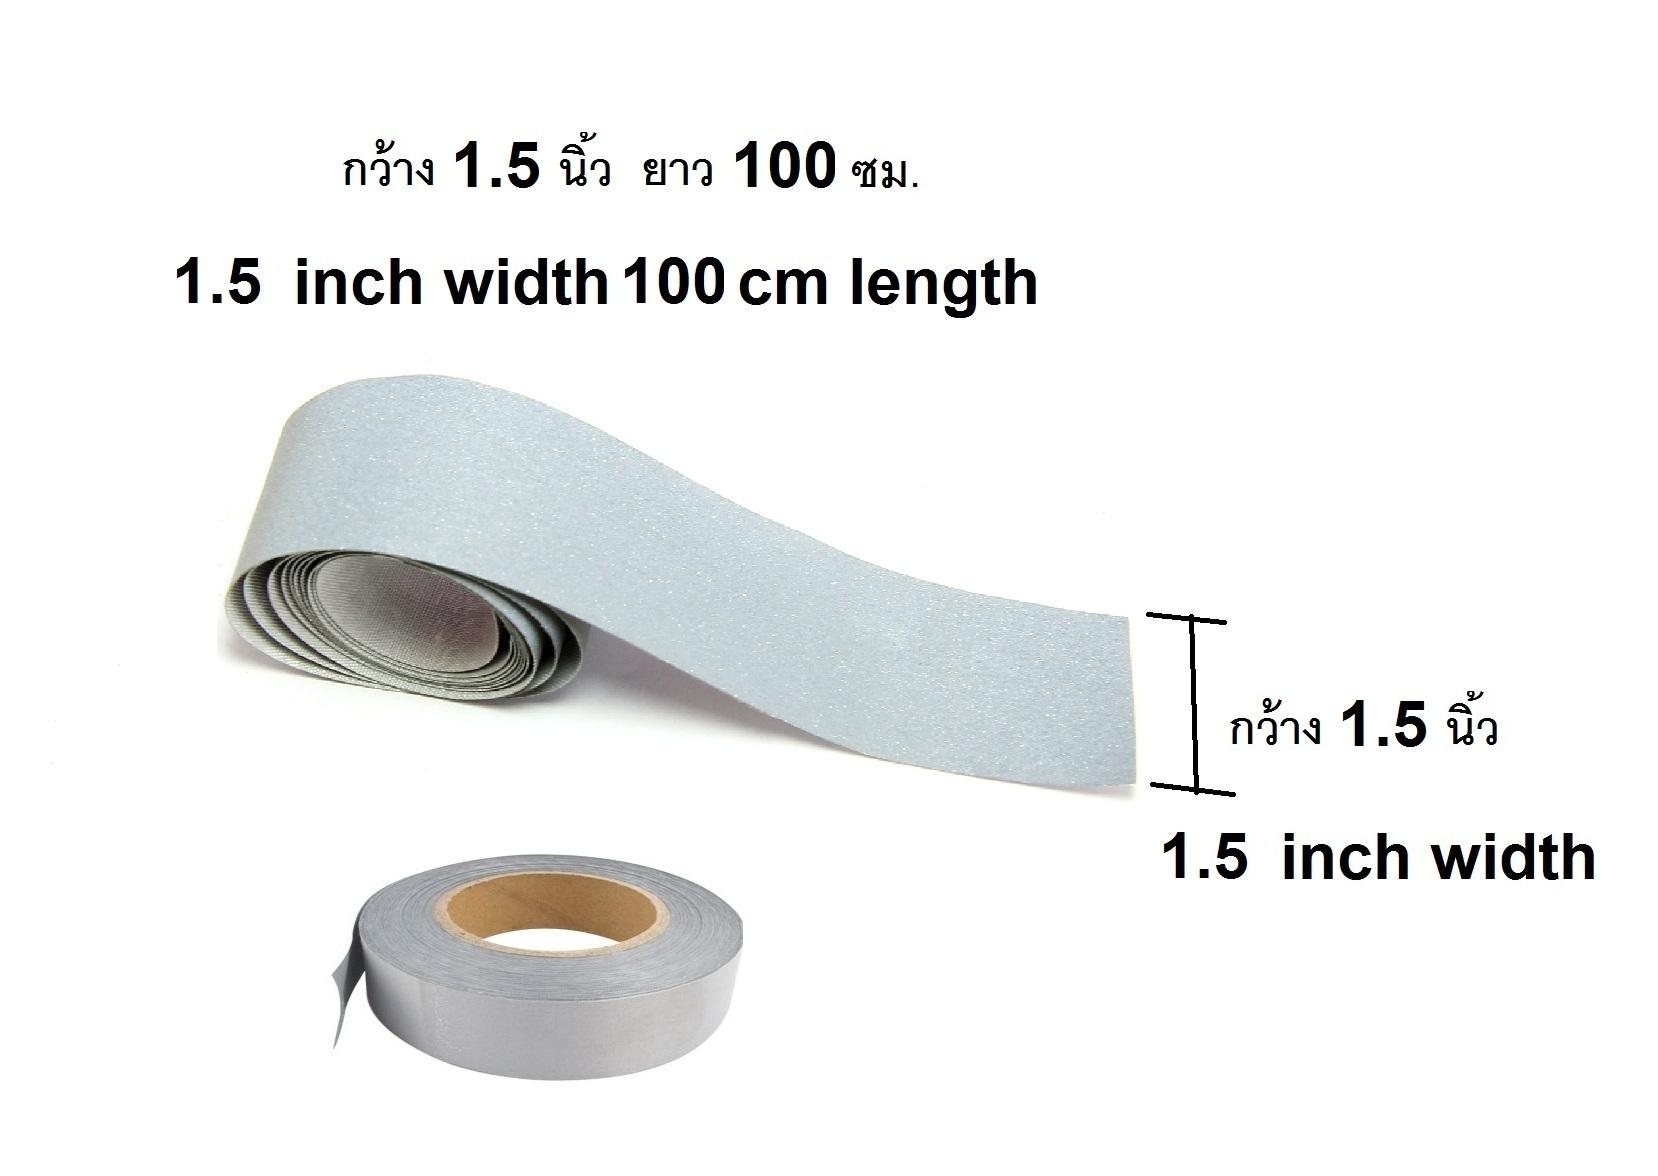 แถบสะท้อนแสง เทปสะท้อนแสง แถบผ้าสะท้อนแสง สีเทา หน้ากว้าง 1.5  นิ้ว  ยาว 100  ซม. แบบไม่มีเทปกาวที่ด้านหลัง   Fabric Gray Reflective Safety Security Strip For Sew-on only 1.5 inch  width 100 cm Length